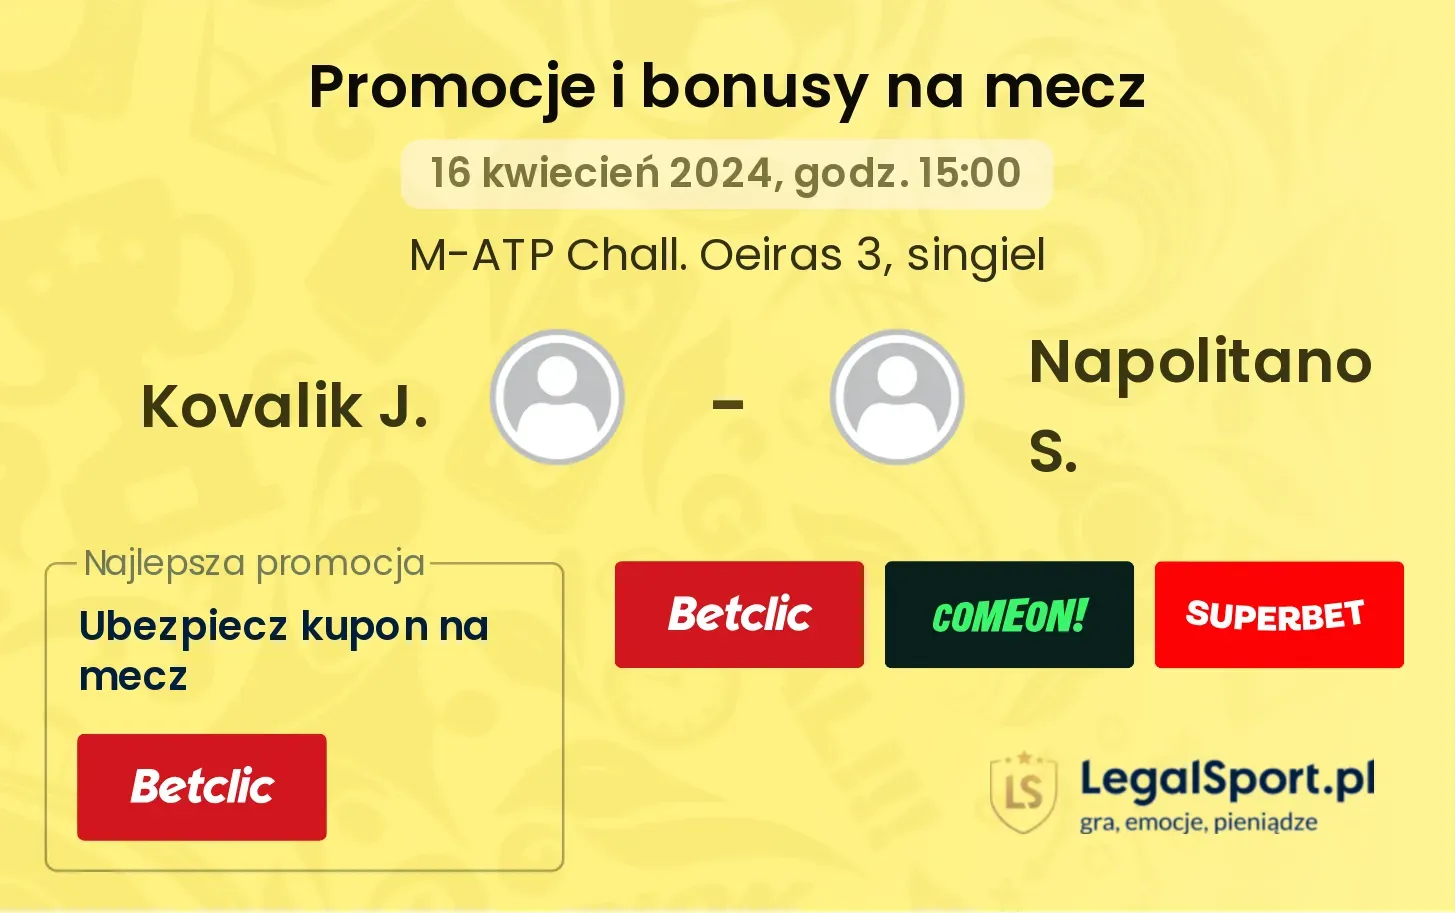 Kovalik J. - Napolitano S. promocje bonusy na mecz